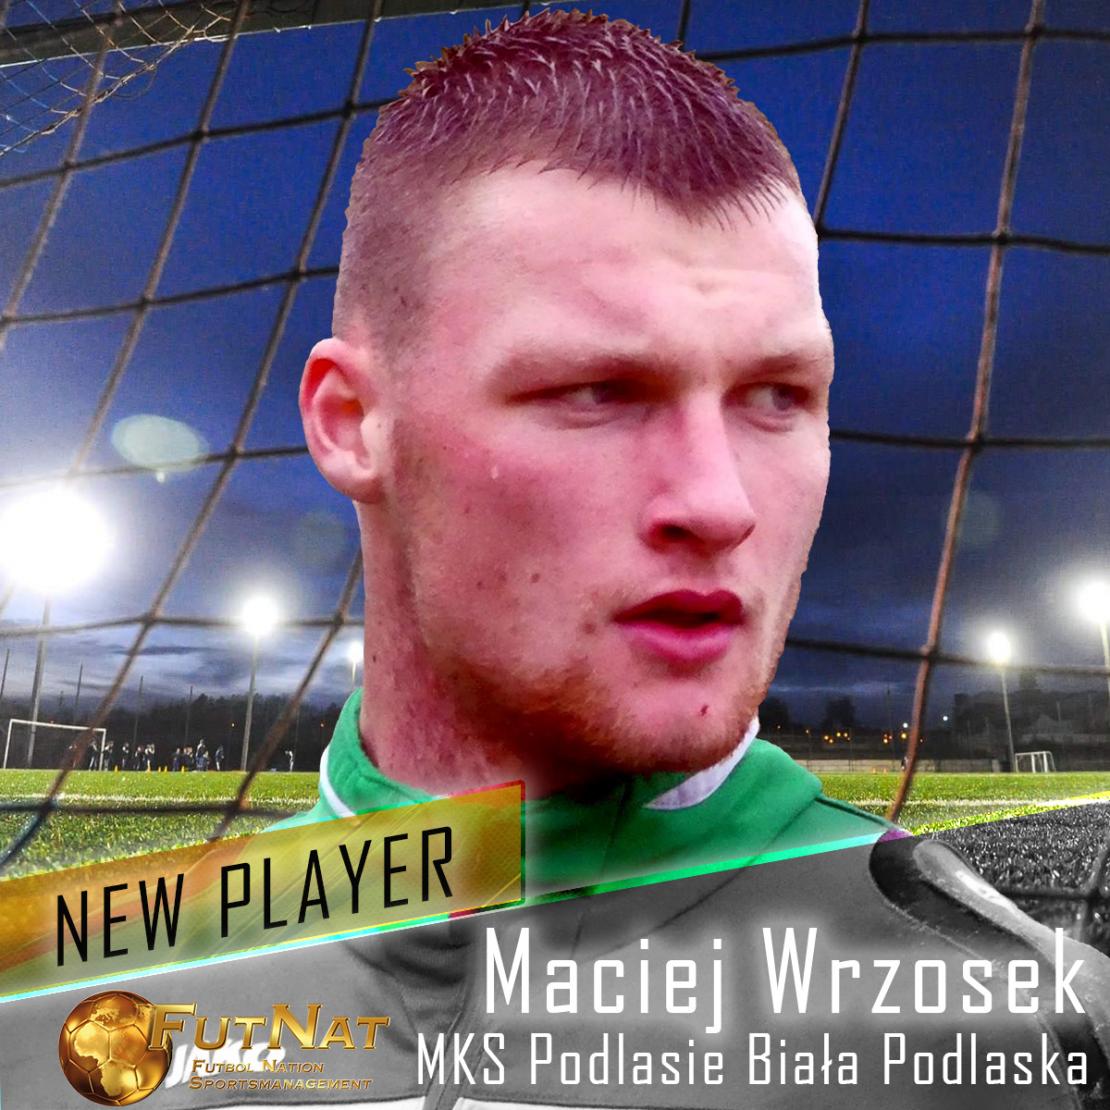 Maciej Wrzosek new player for FutNat.com